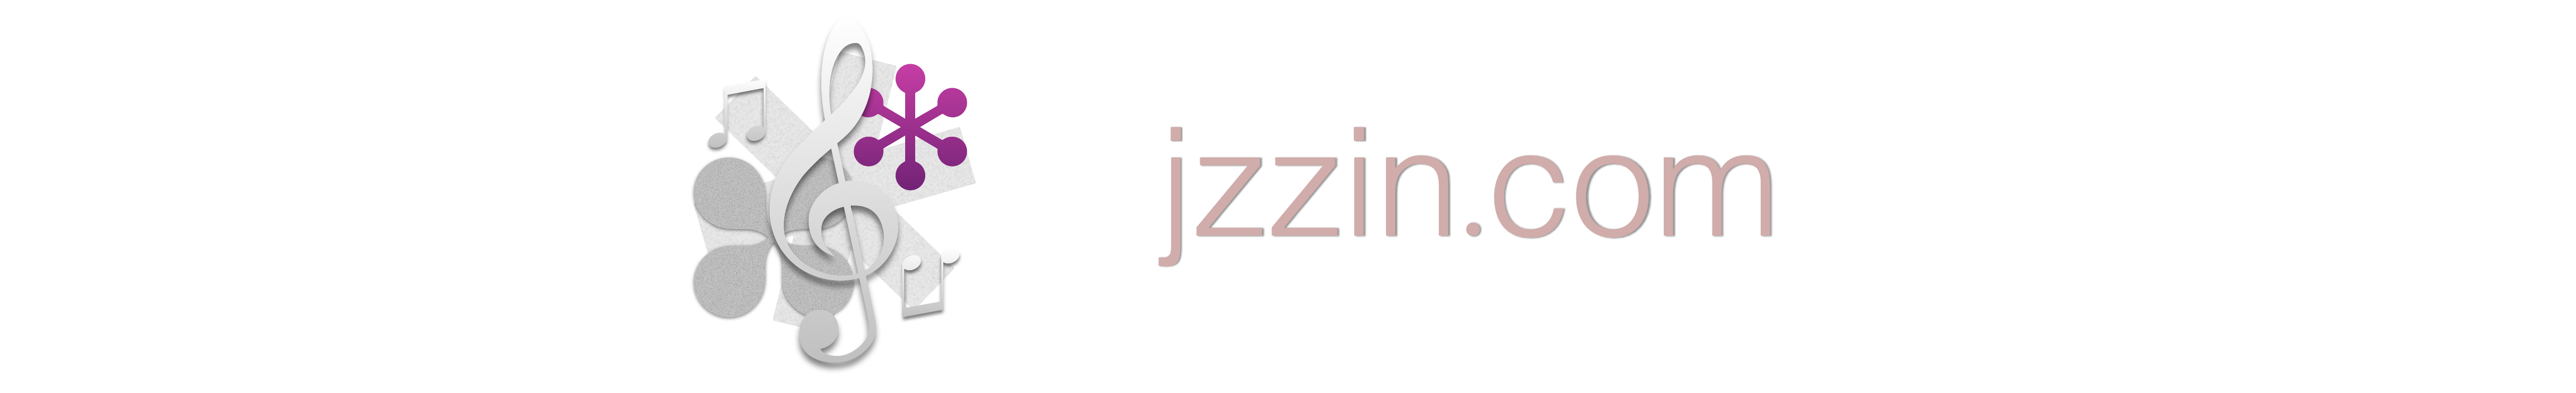 jzzin.com